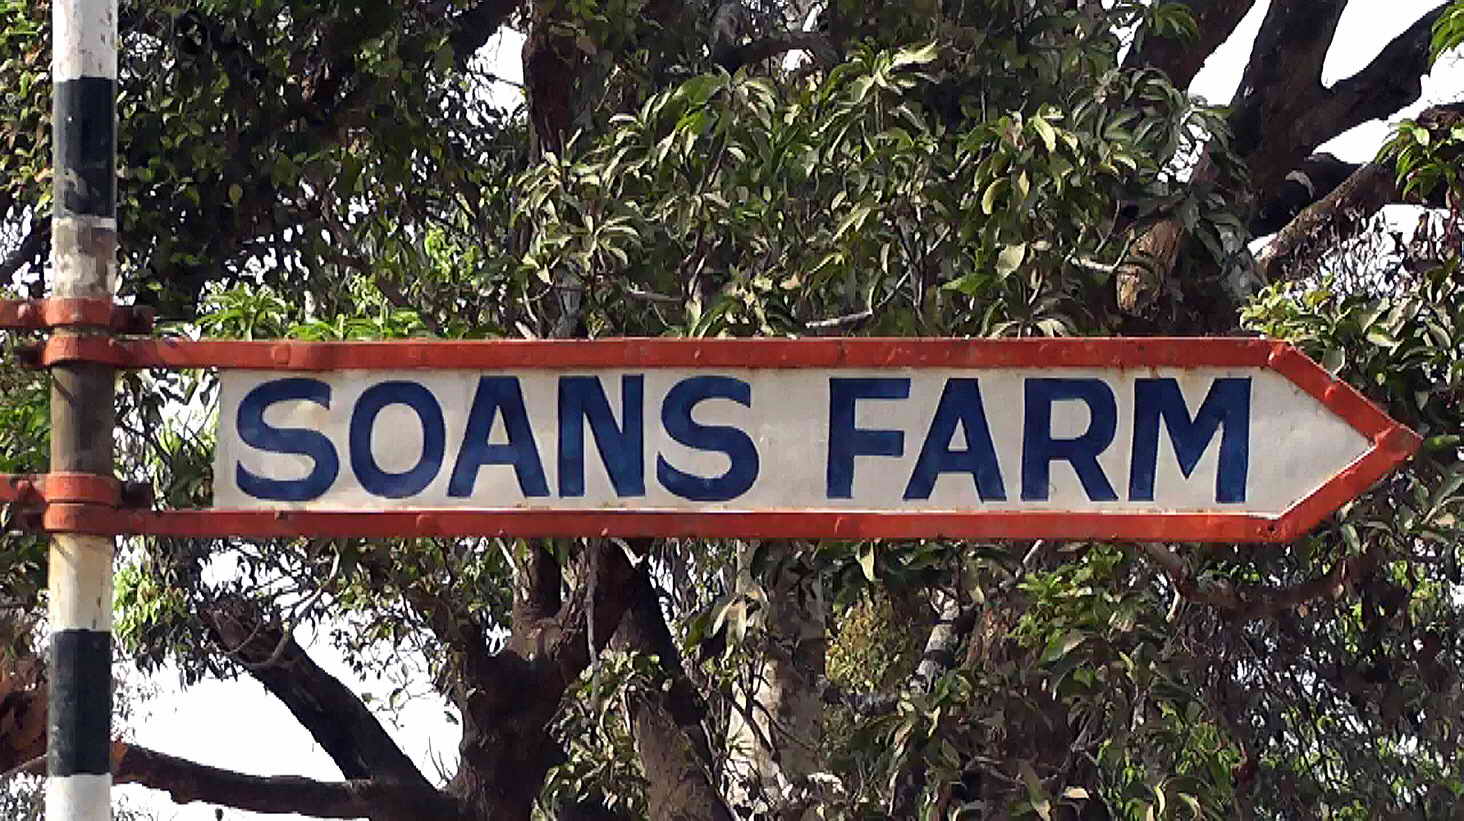 Soans Farm